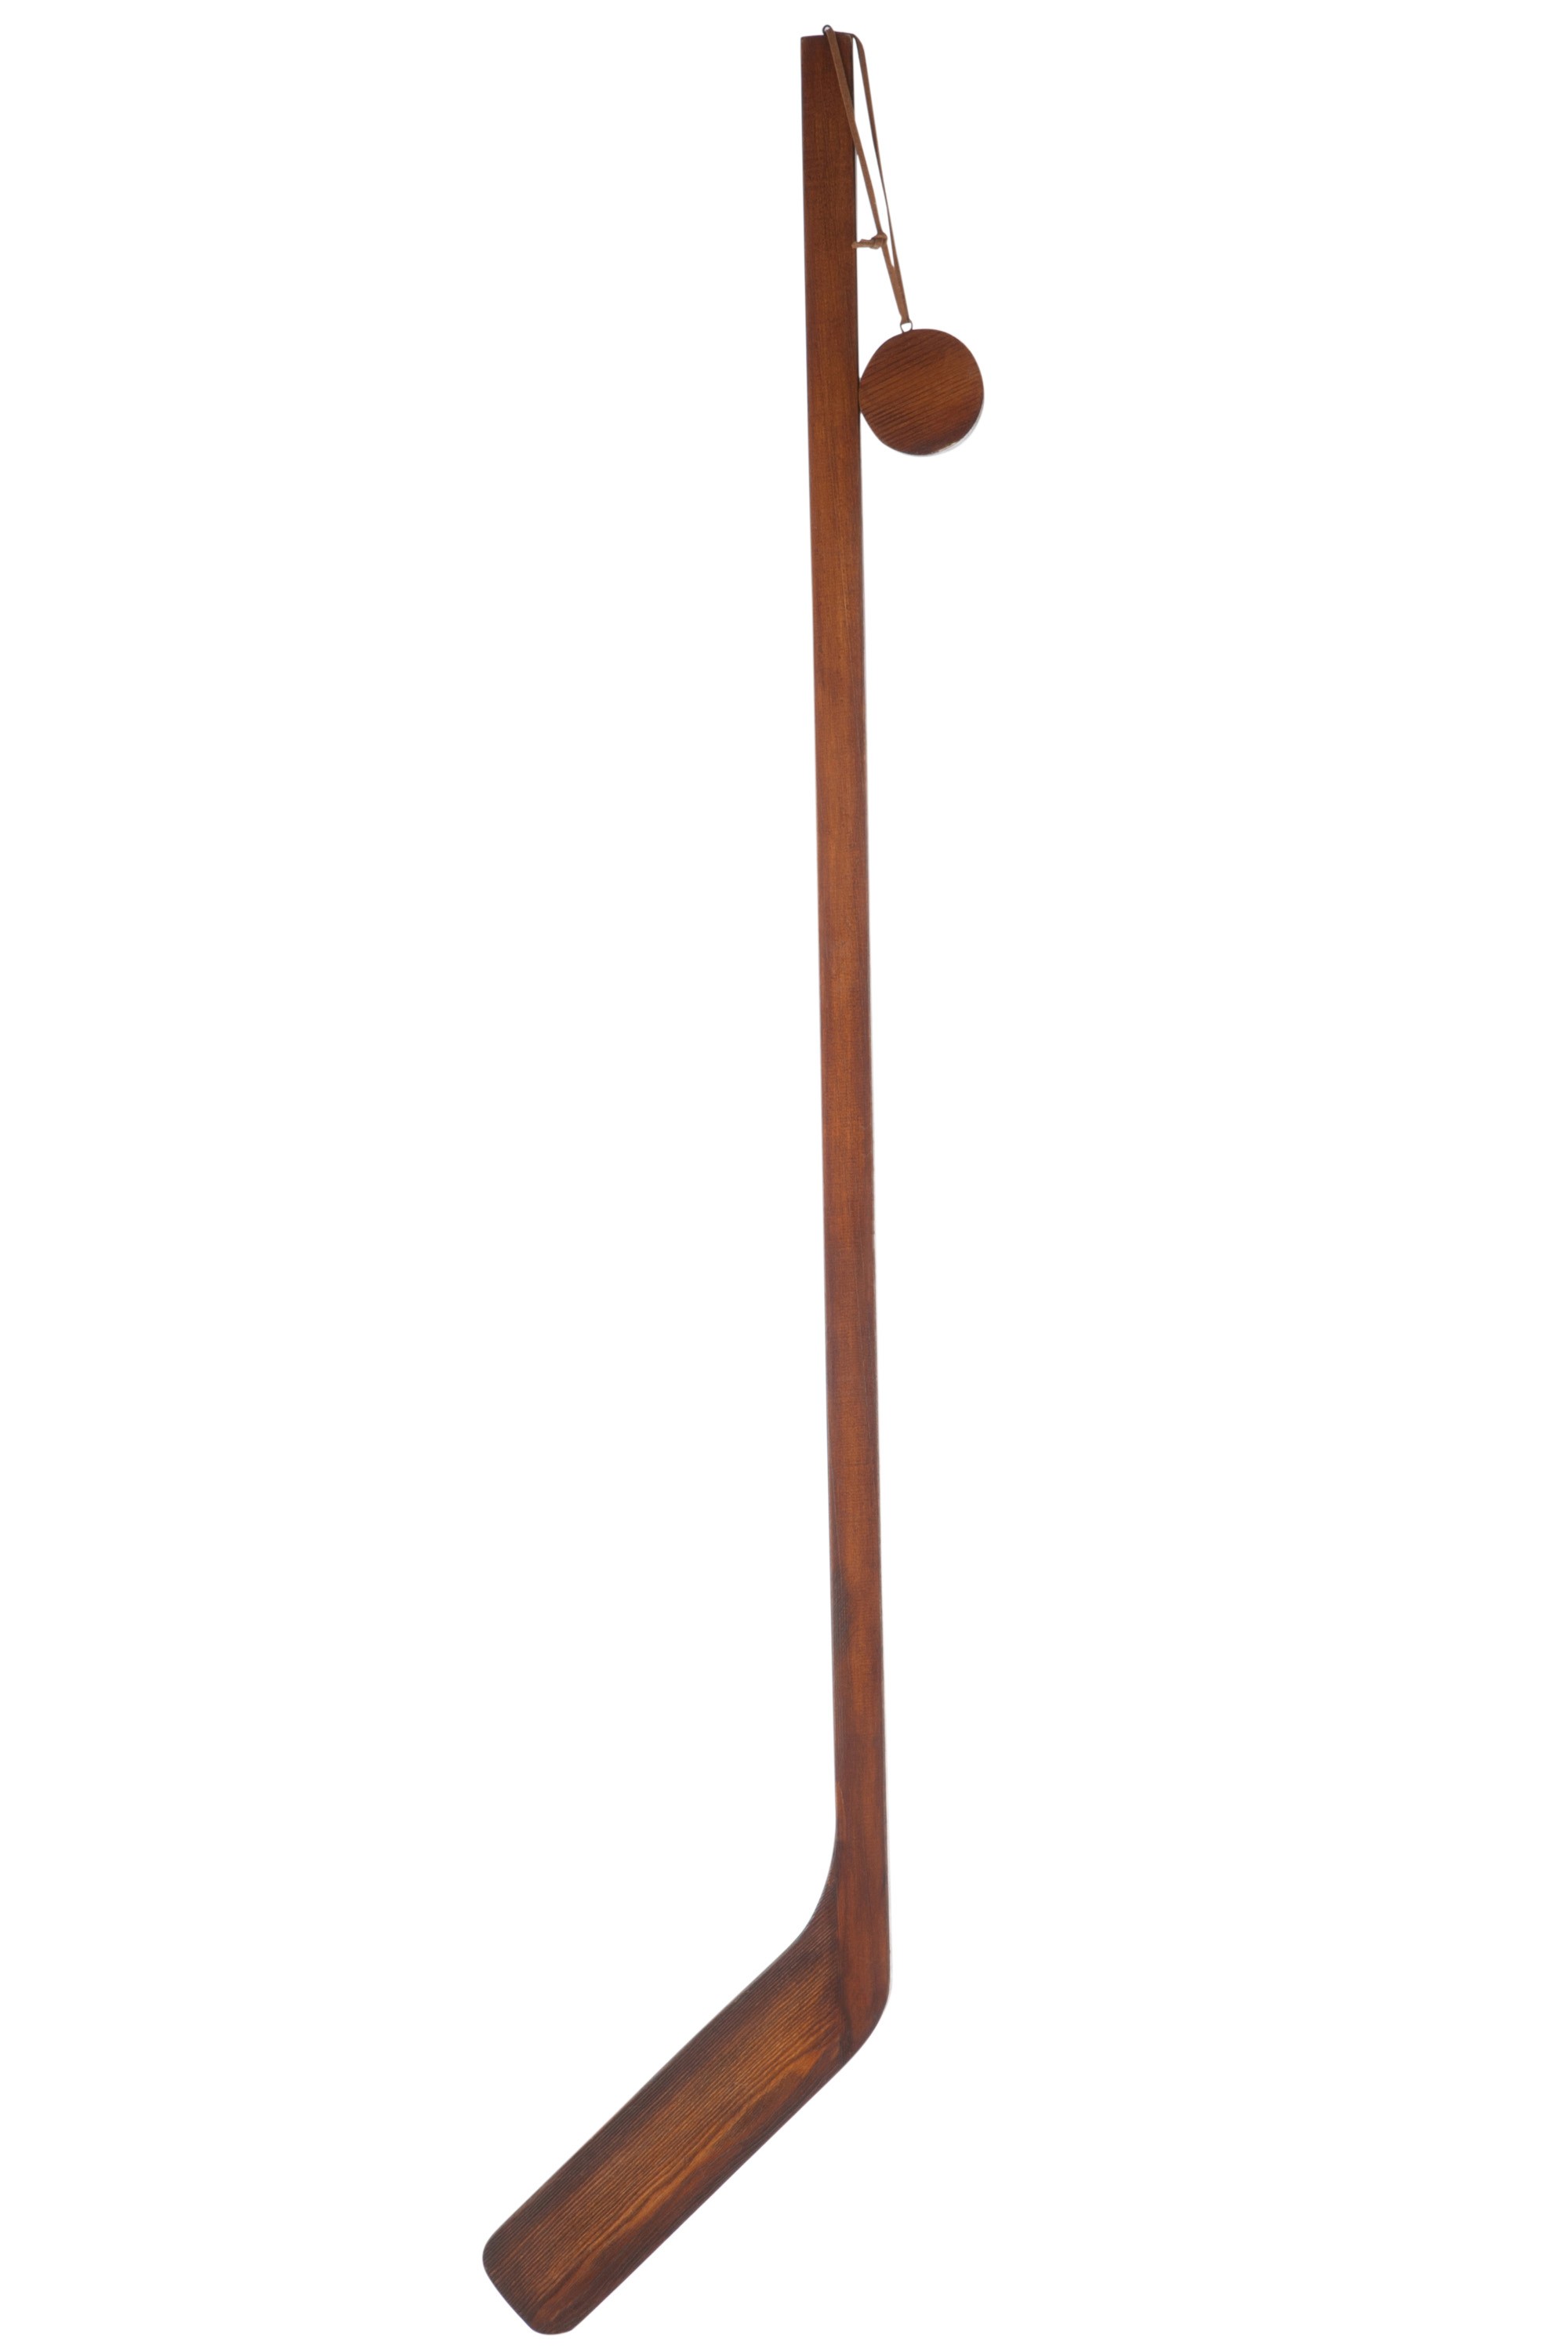 Dekorace dřevěná hokejka s pukem - 3*26*126 cm J-Line by Jolipa